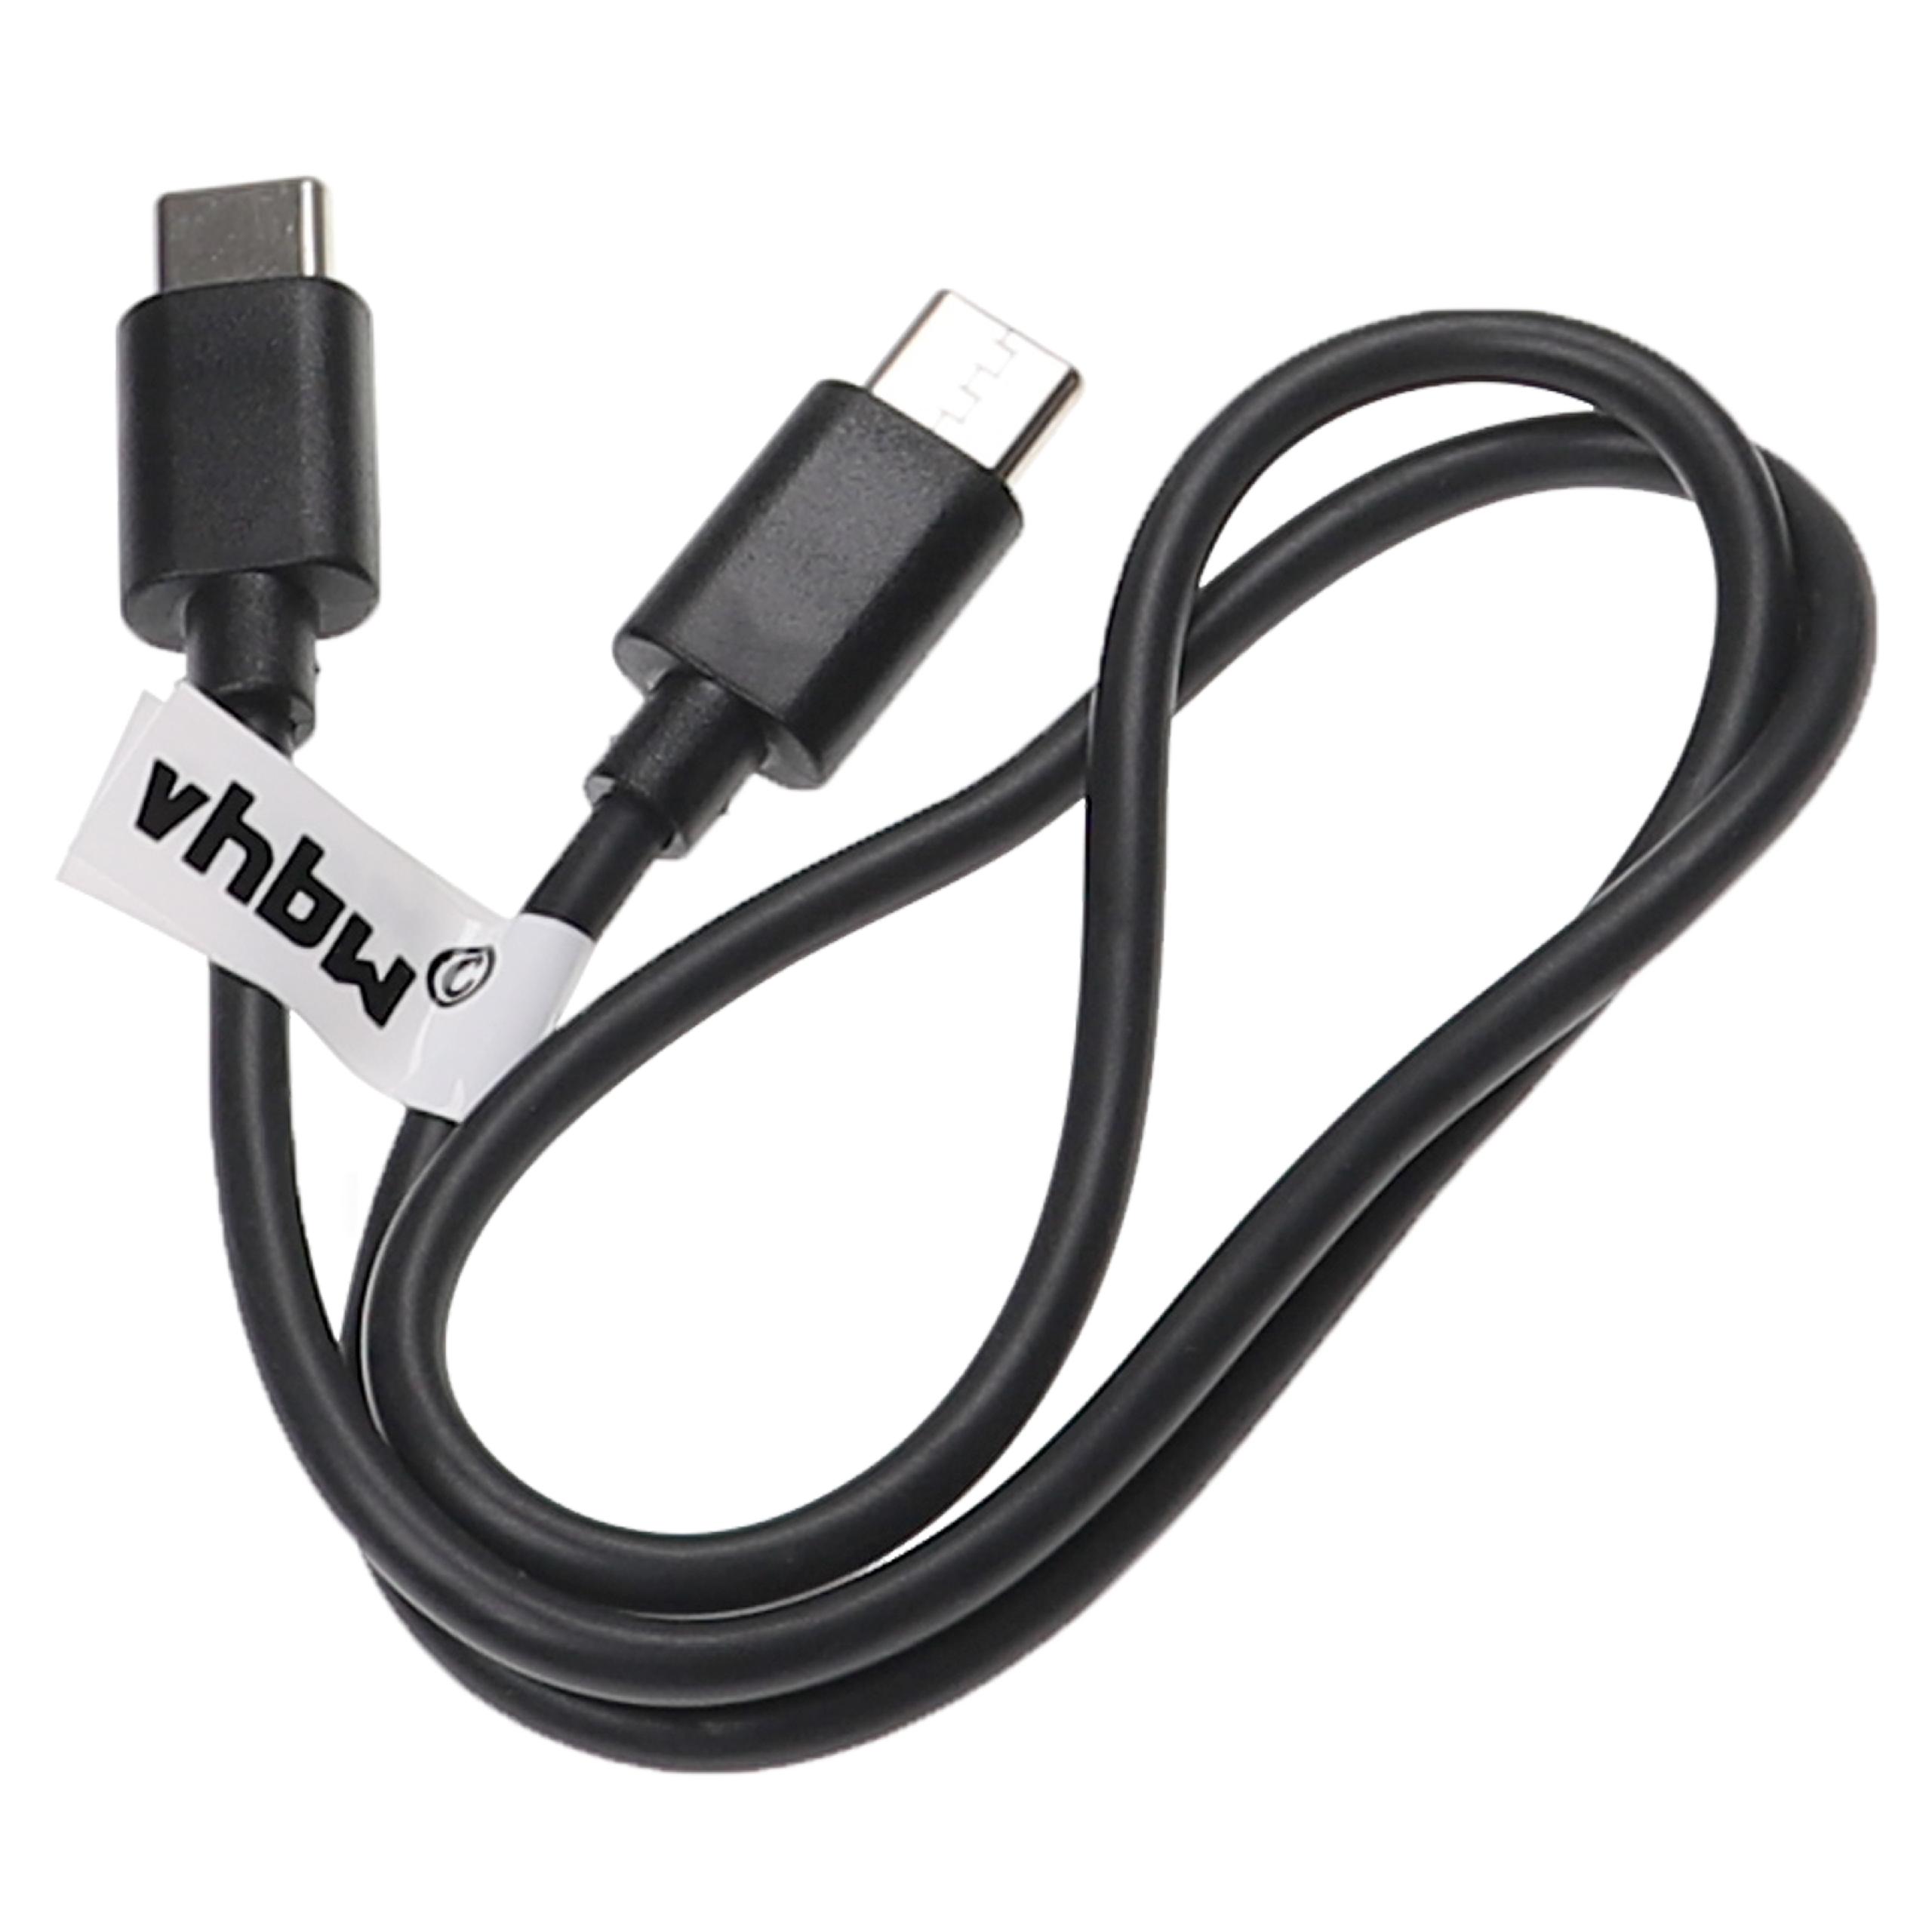 Cable de carga USB C para diversos portátiles, tablets, smartphones - 50 cm, negro